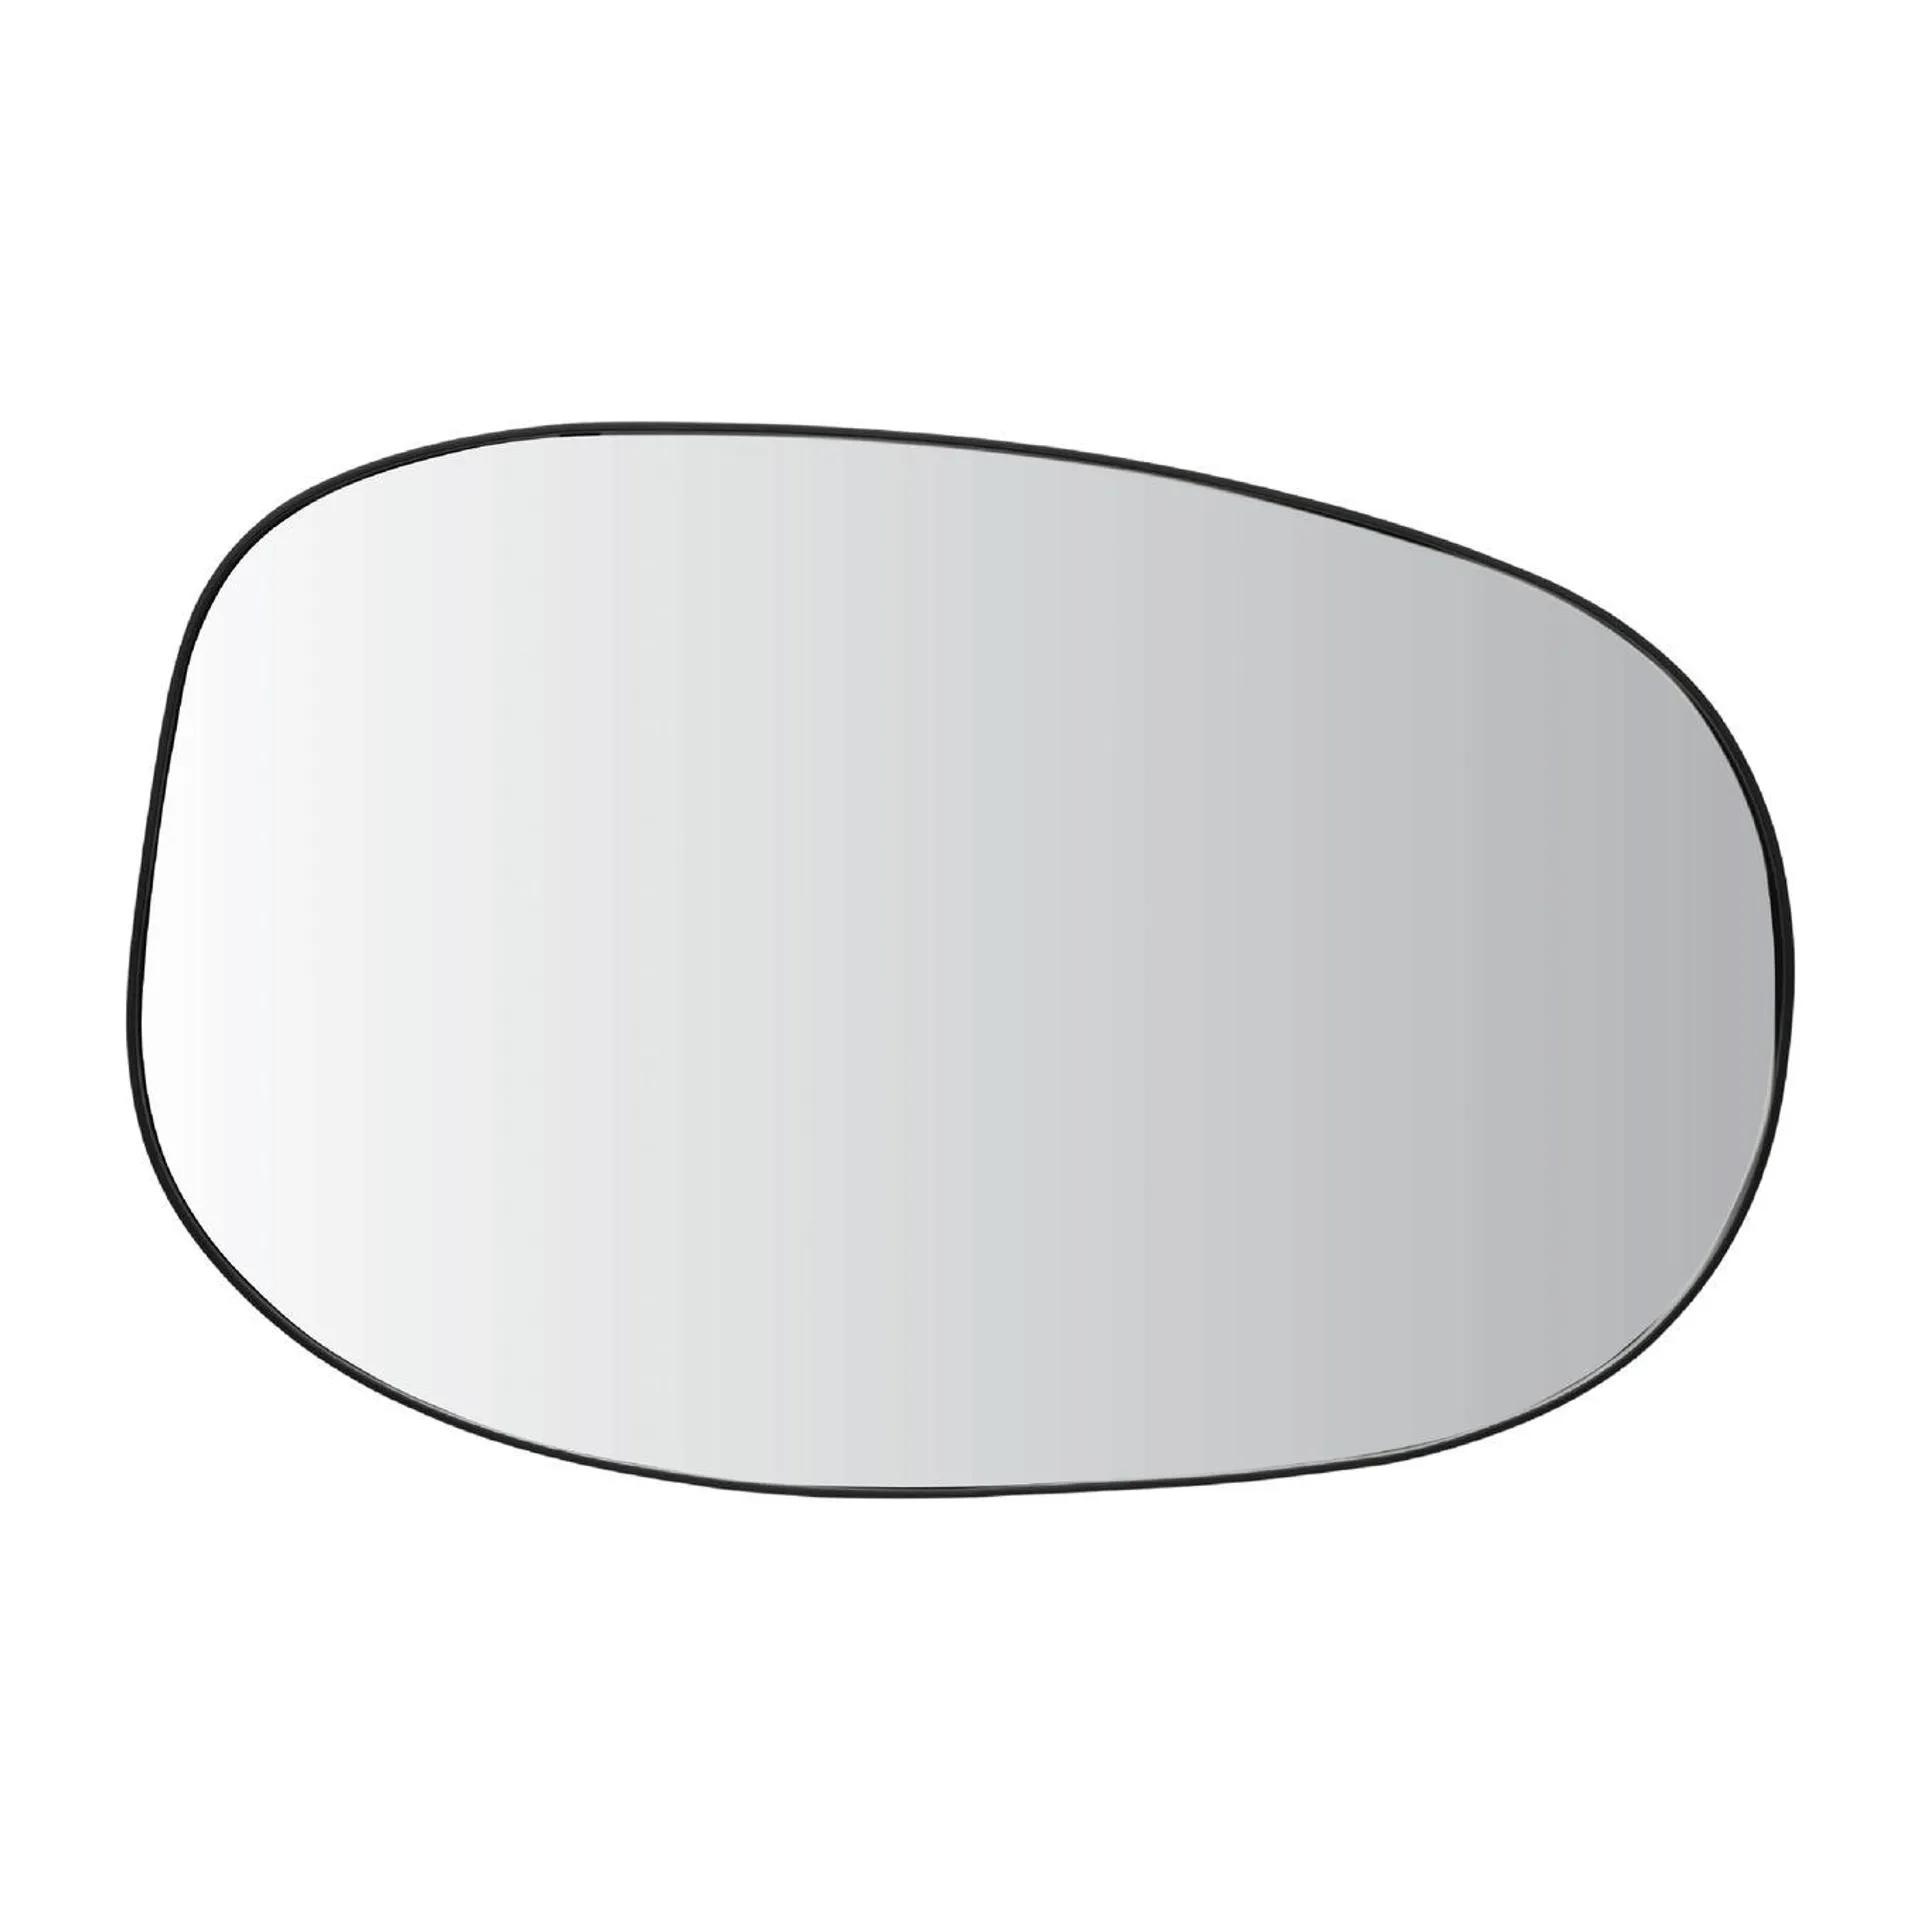 Organic mirror 54x34.5 cm